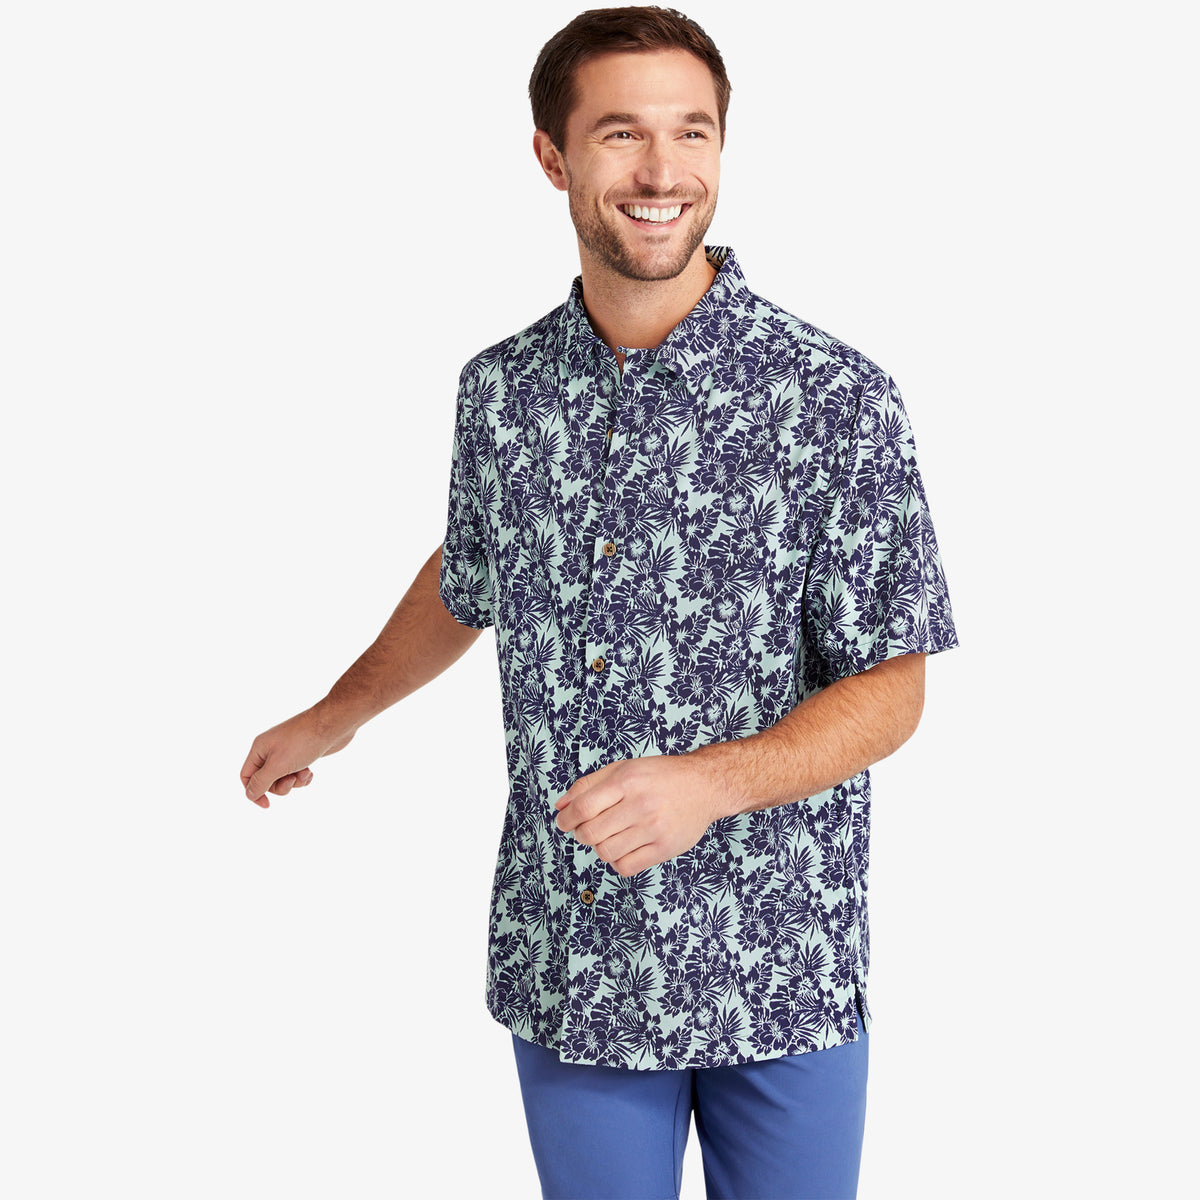 Capri Camp Shirt - Navy Aqua Floral Print - Mizzen+Main